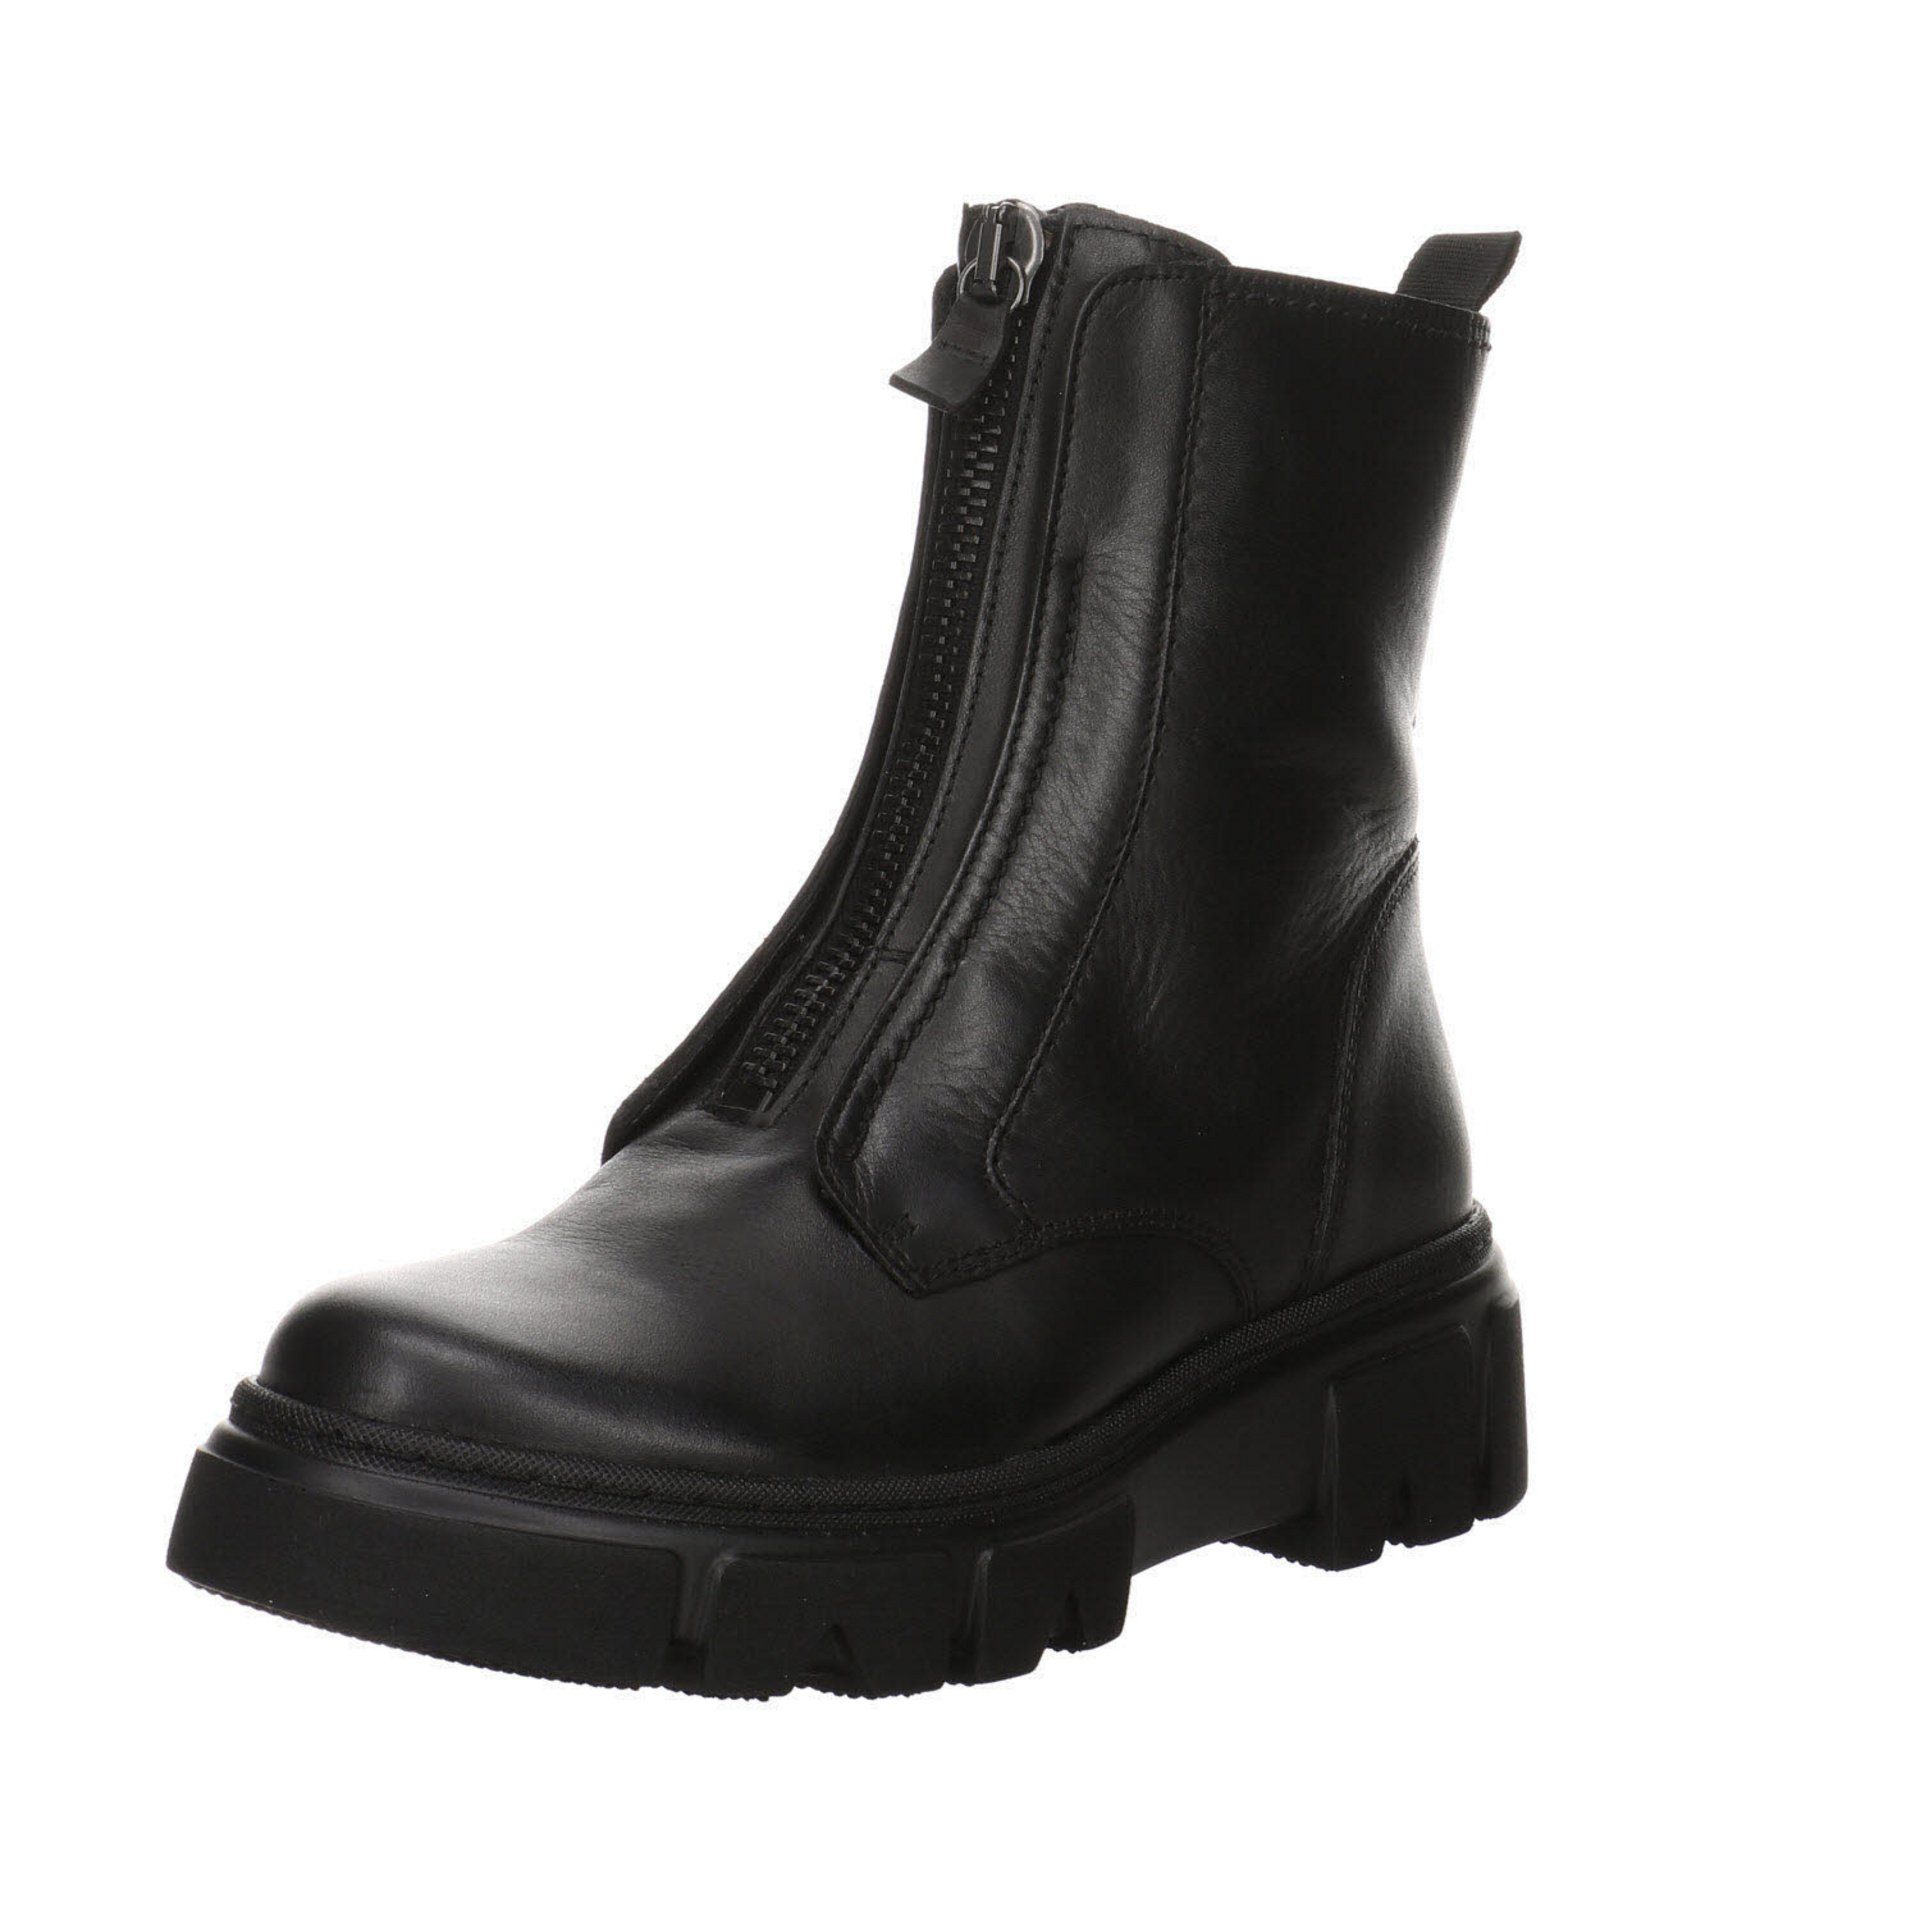 Gabor »Damen Stiefeletten Schuhe Boots Elegant Freizeit« Stiefelette  Glattleder online kaufen | OTTO